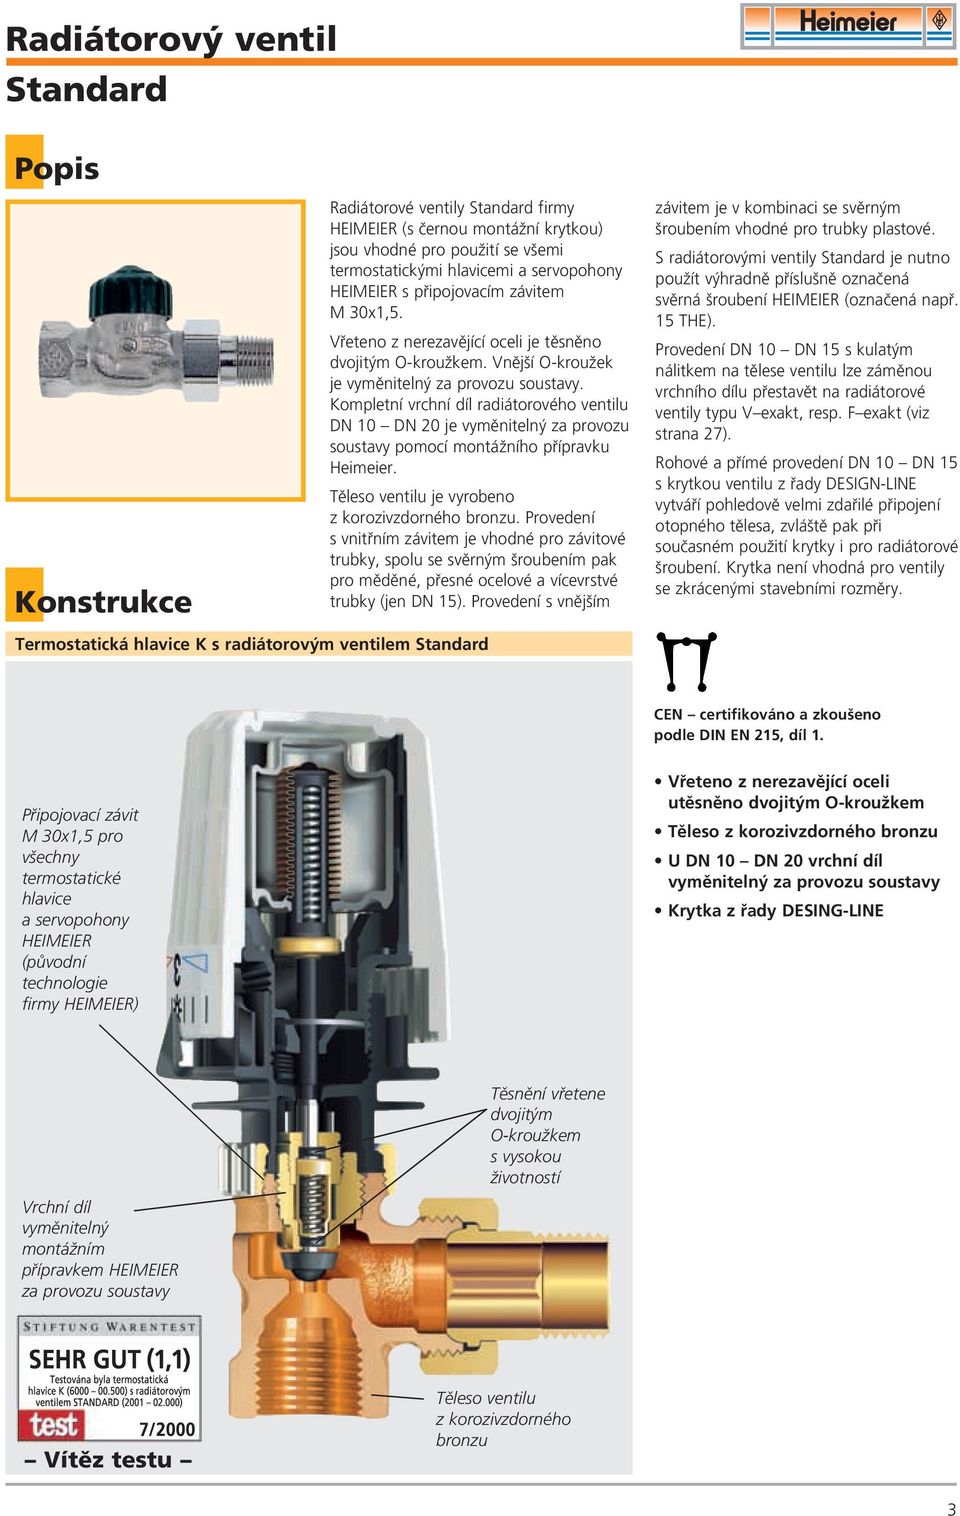 Kompletní vrchní díl radiátorového ventilu DN 10 DN 20 je vymûniteln za provozu soustavy pomocí montáïního pfiípravku Heimeier. Tûleso ventilu je vyrobeno z korozivzdorného bronzu.